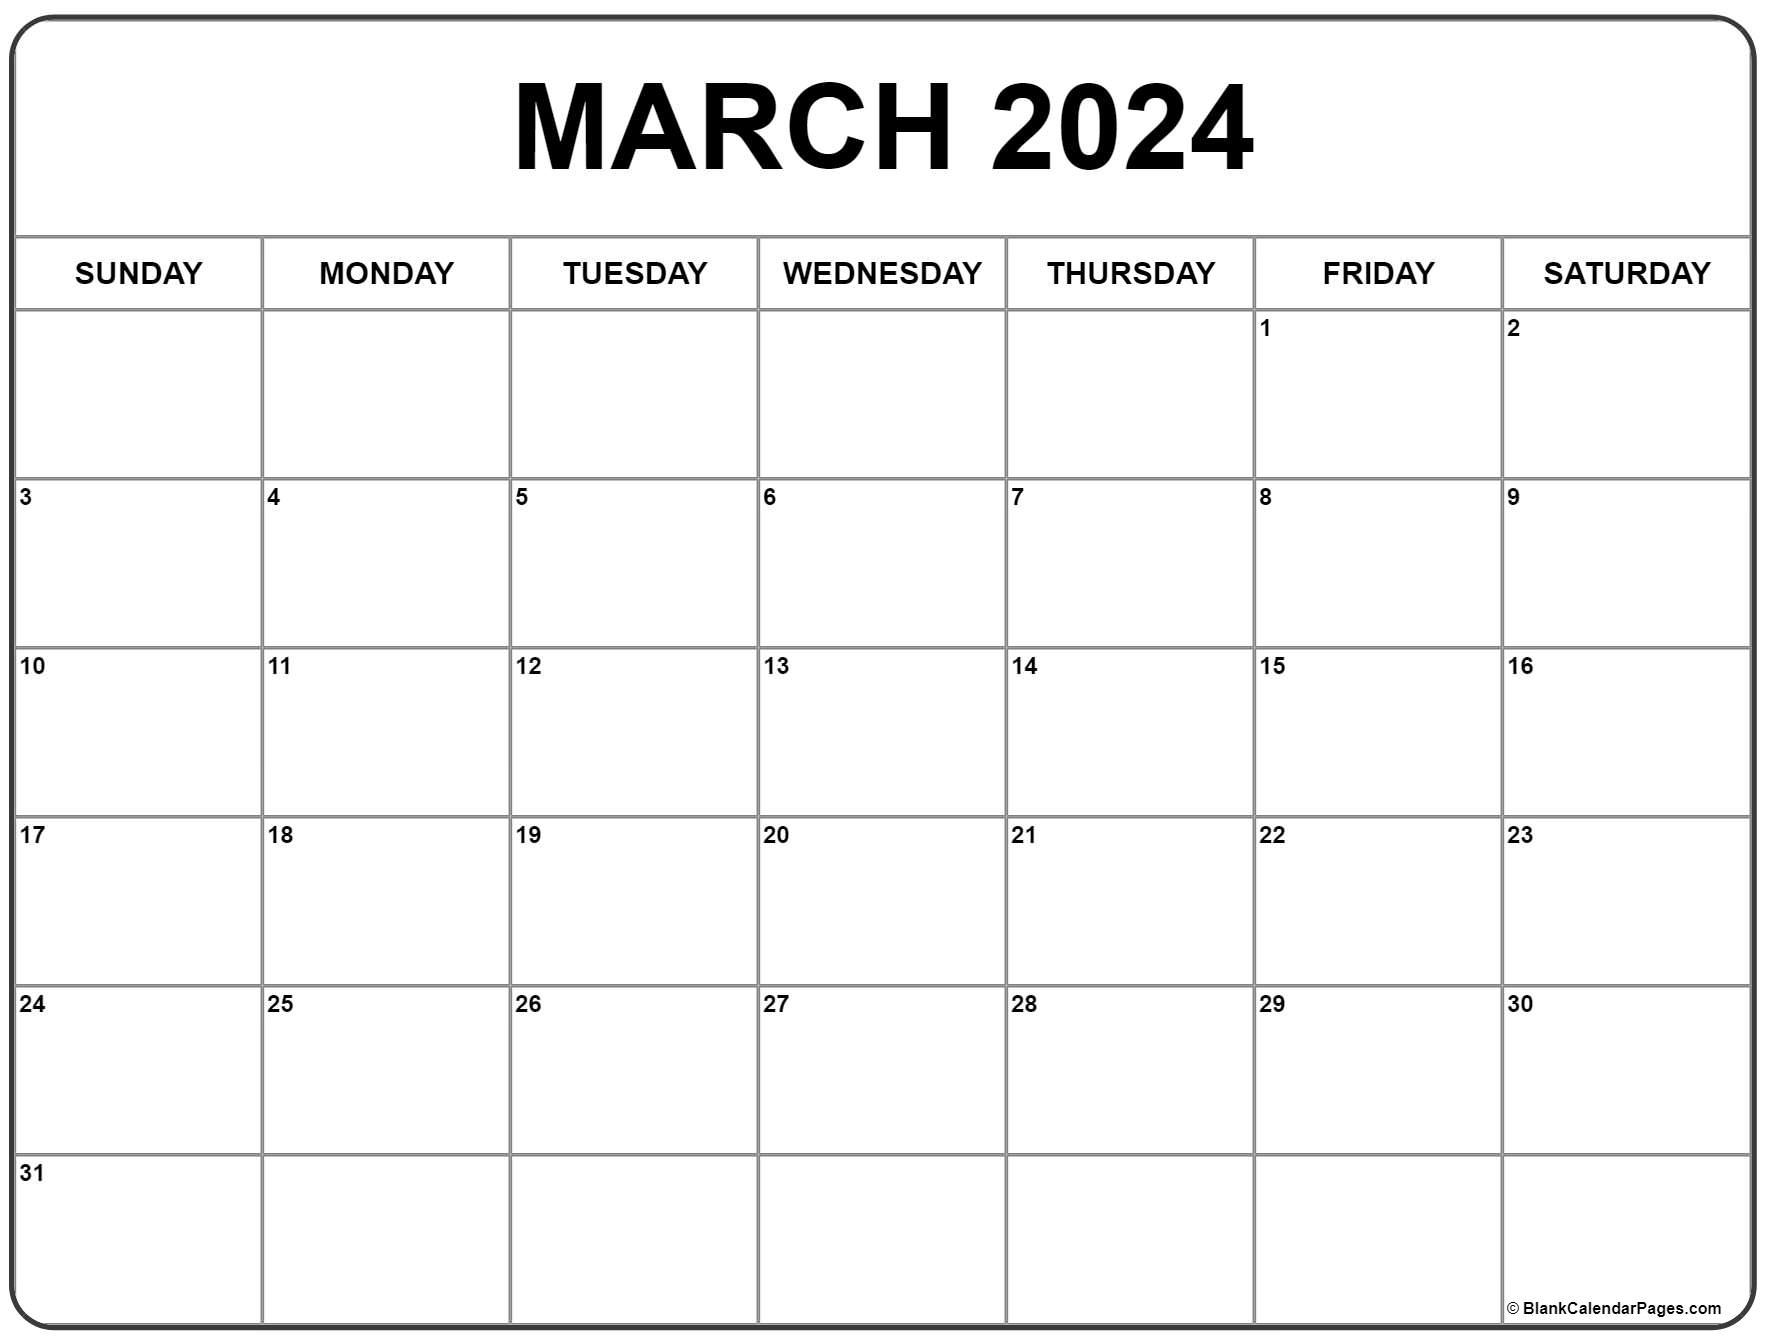 March 2024 Calendar | Free Printable Calendar for March 2024 Printable Calendar